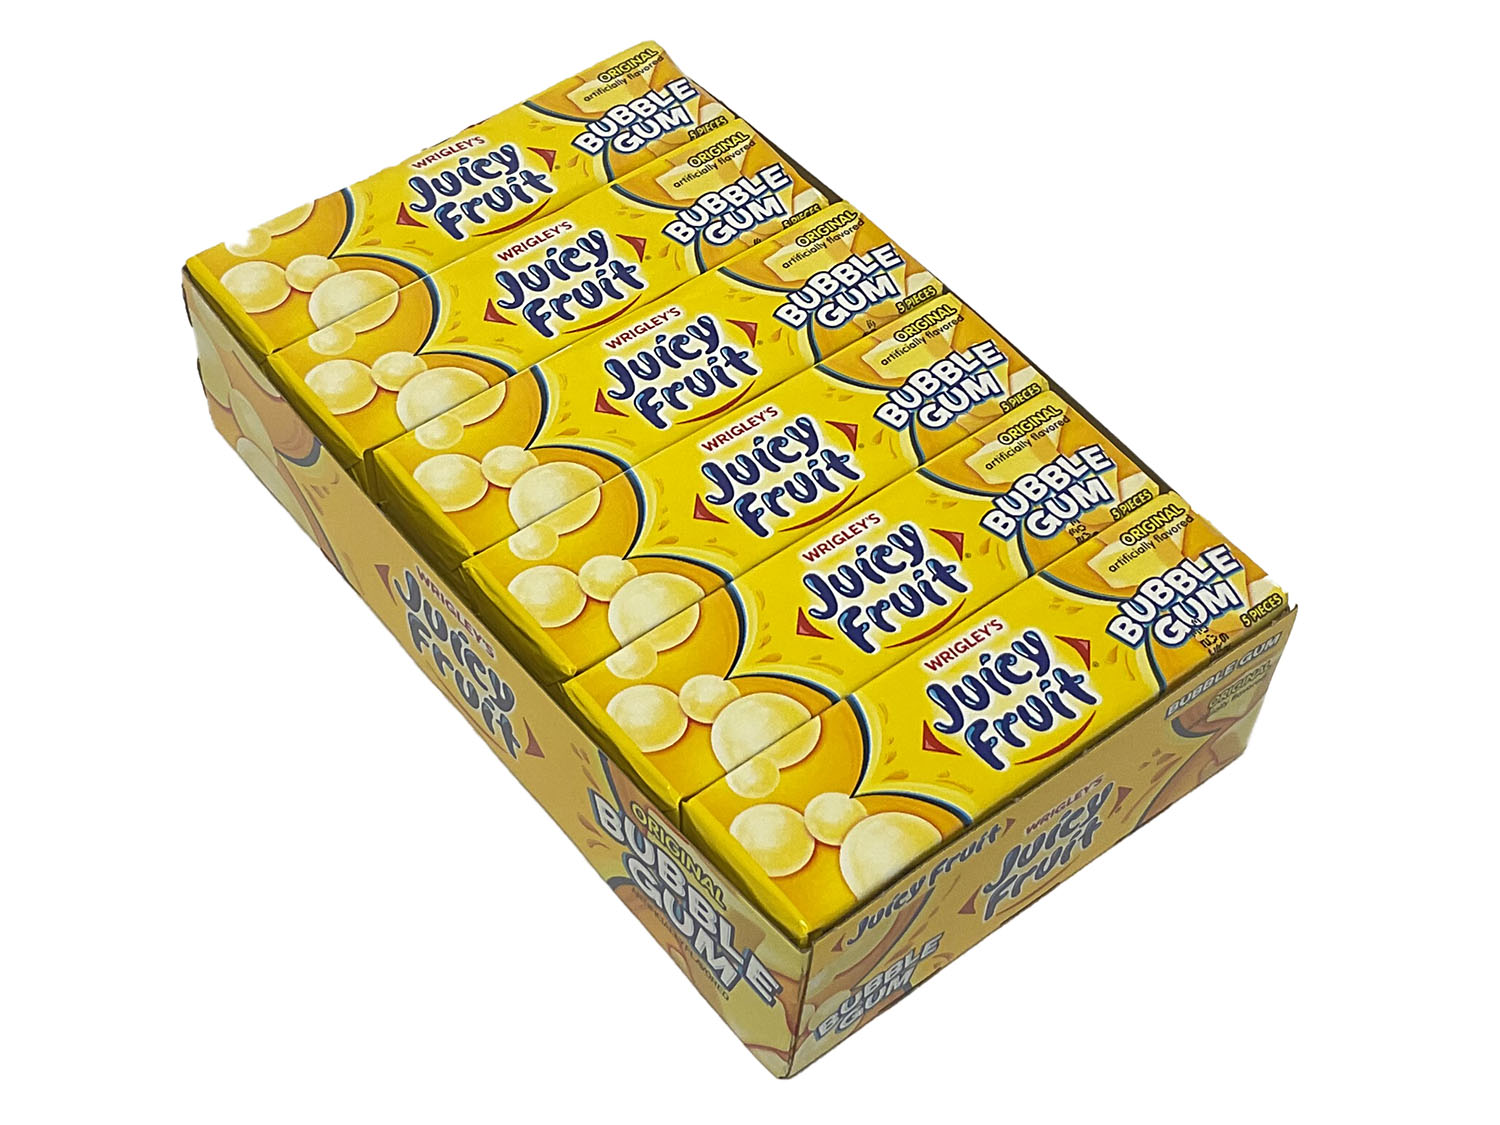 Juicy Fruit Bubble Gum - 1.41 oz Pack - box of 18 packs